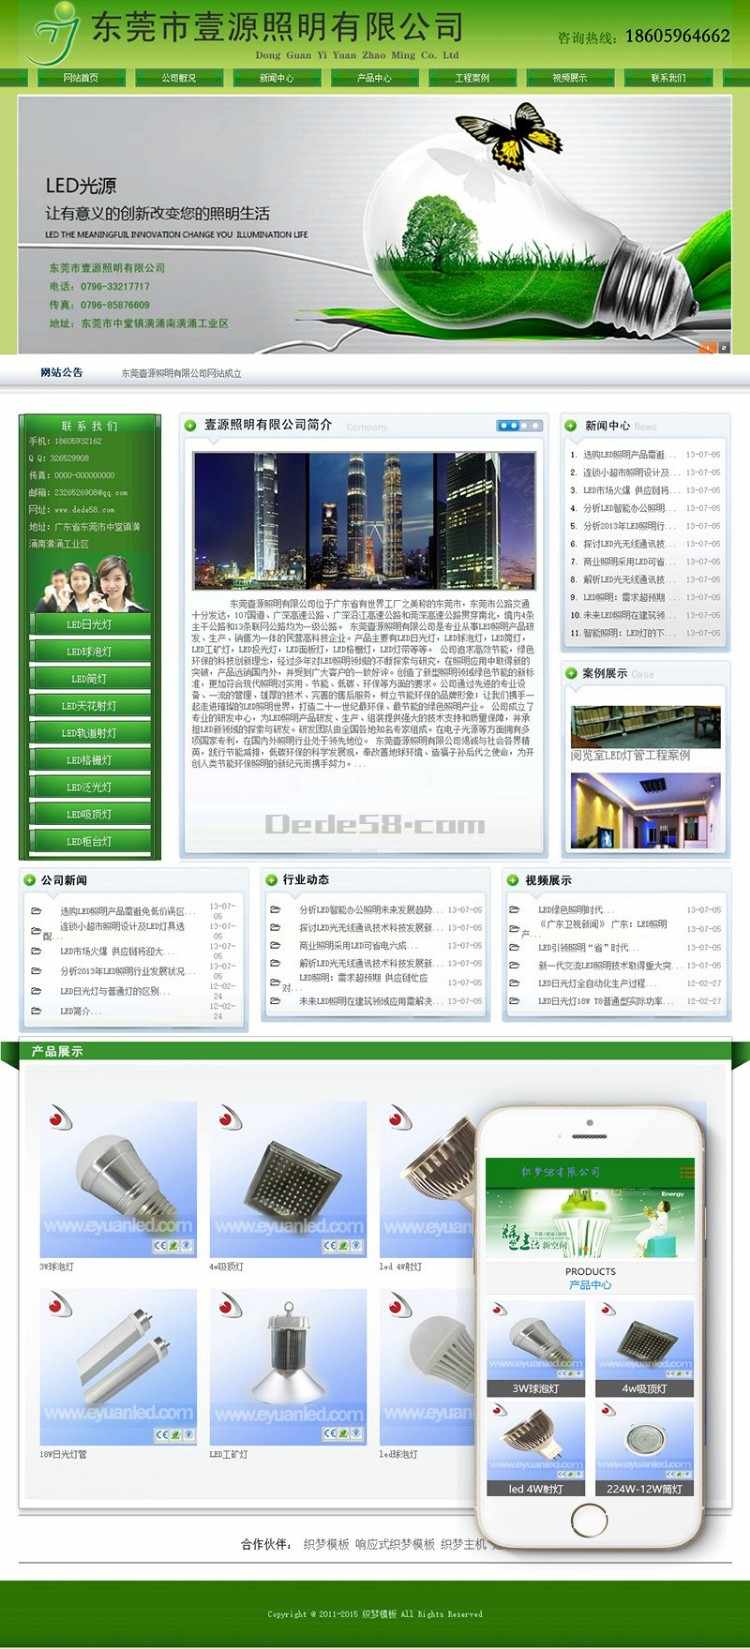 dede绿色节能环保类LED电子产品网站织梦模板（带手机端）